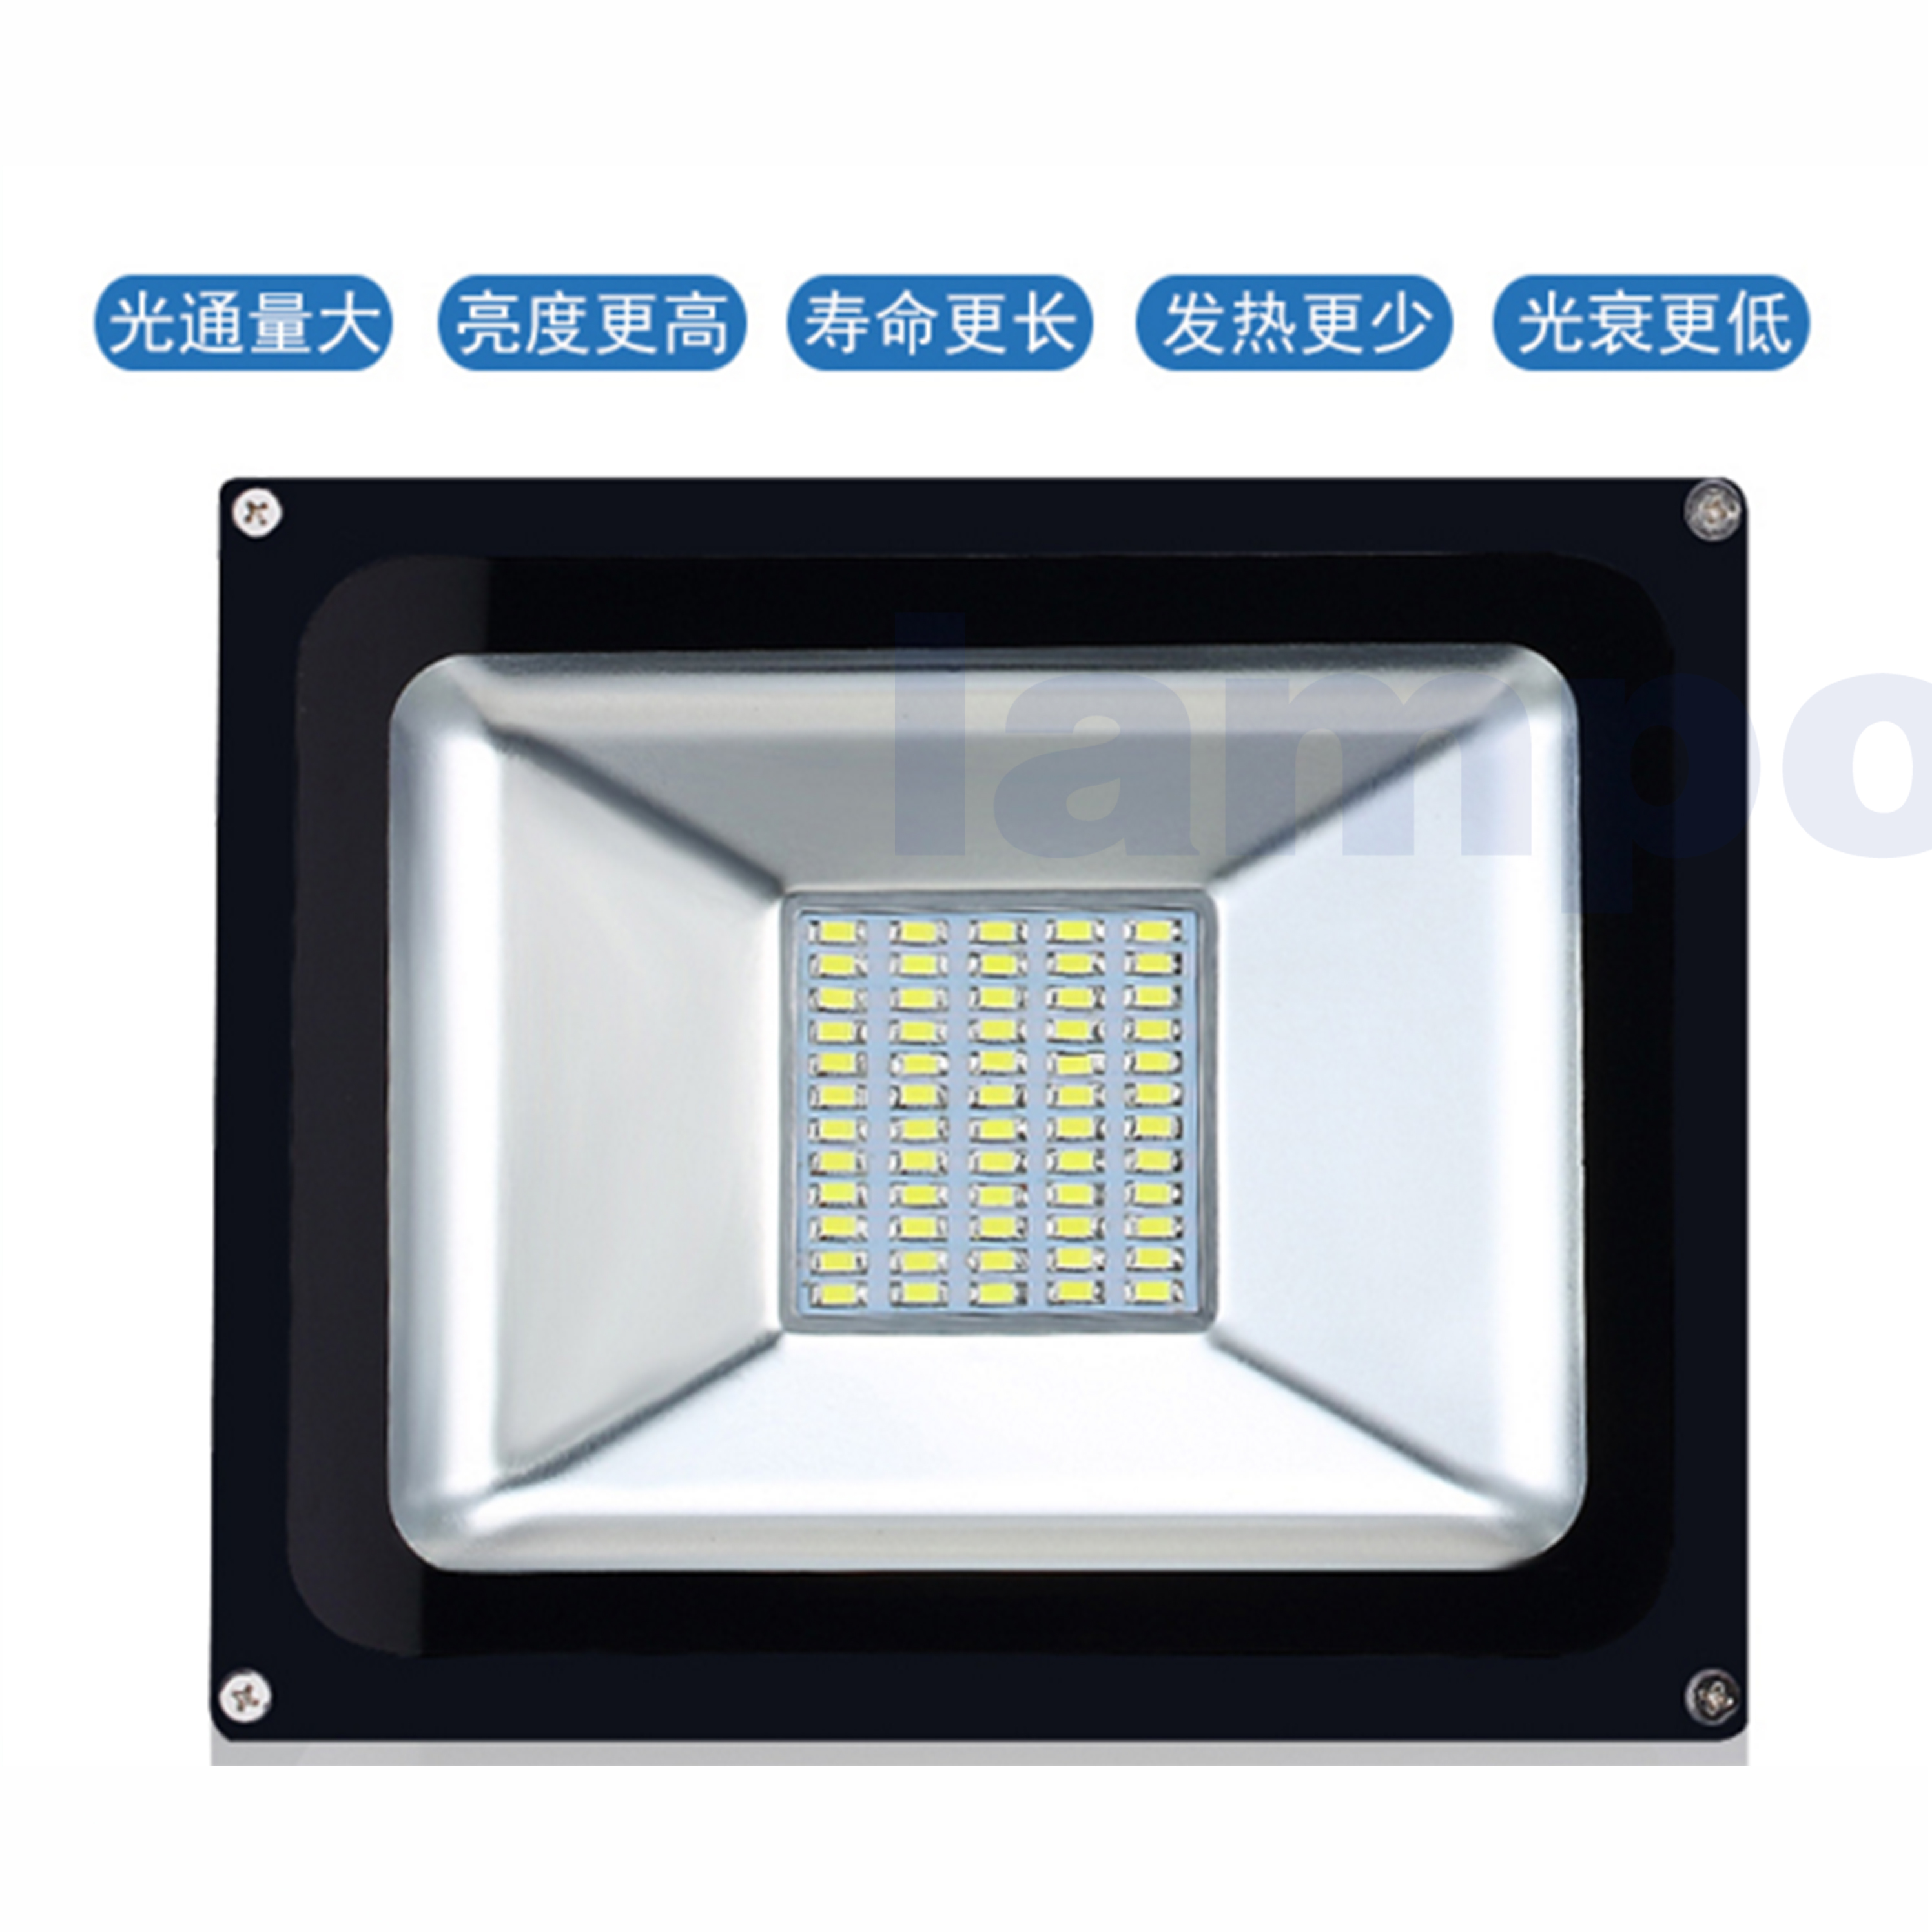 广东LED太阳能路灯厂家直销 东莞厂家太阳能路灯供应直销批发价 优惠